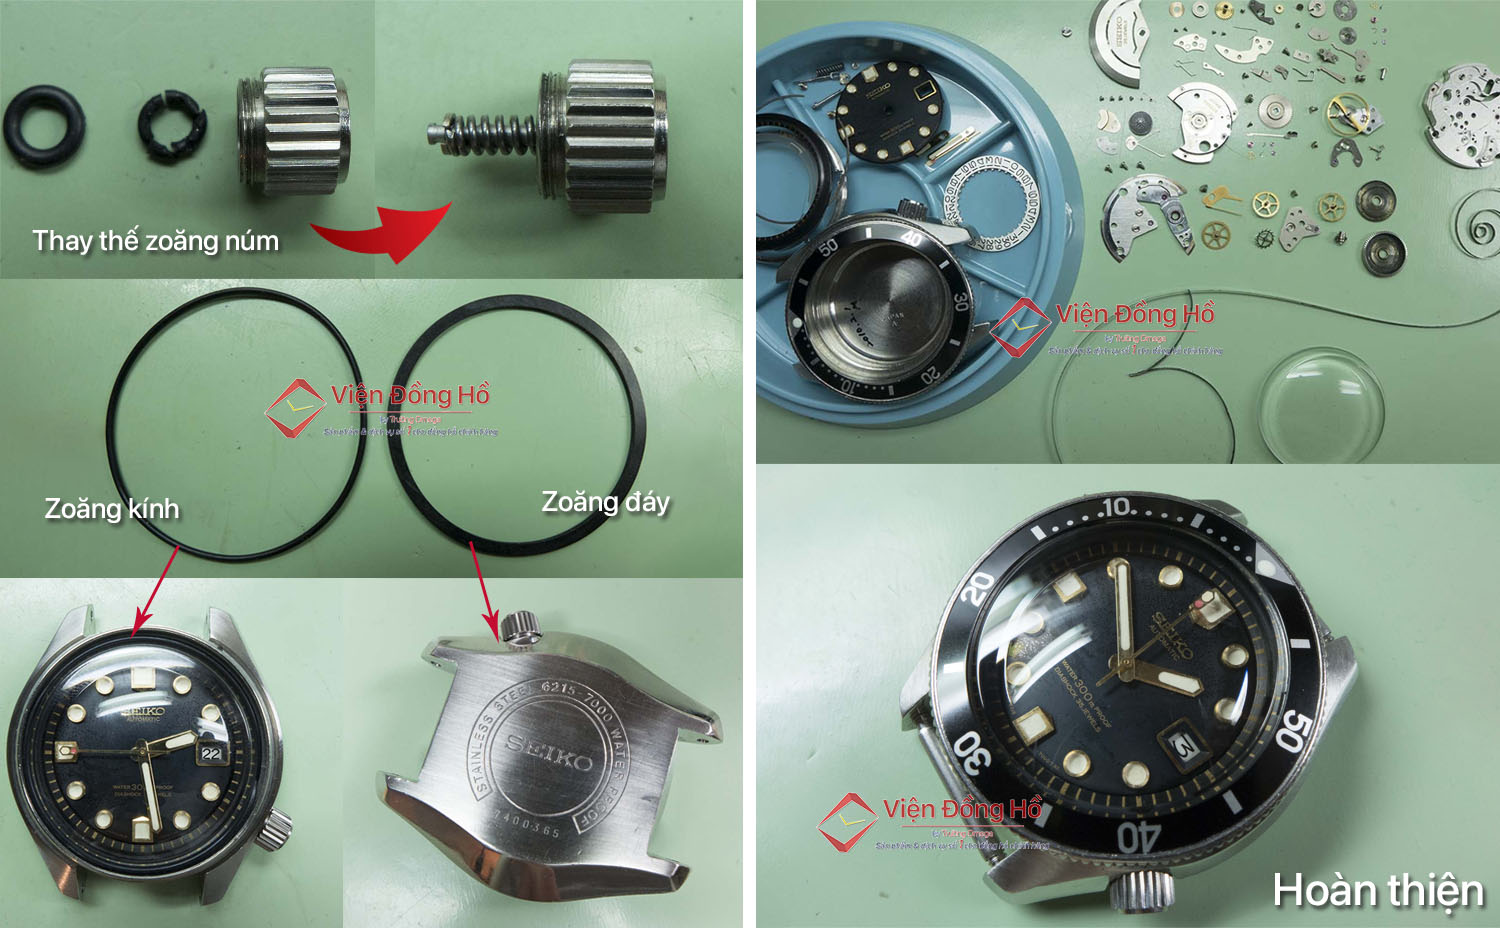 Zoăng núm được thay mới, zoăng kính và zoăng đáy của đồng hồ Seiko được tra silicon bảo dưỡng đảm bảo độ chống nước. Đồng thời đồng hồ cũng được bảo dưỡng lau dầu toàn bộ.